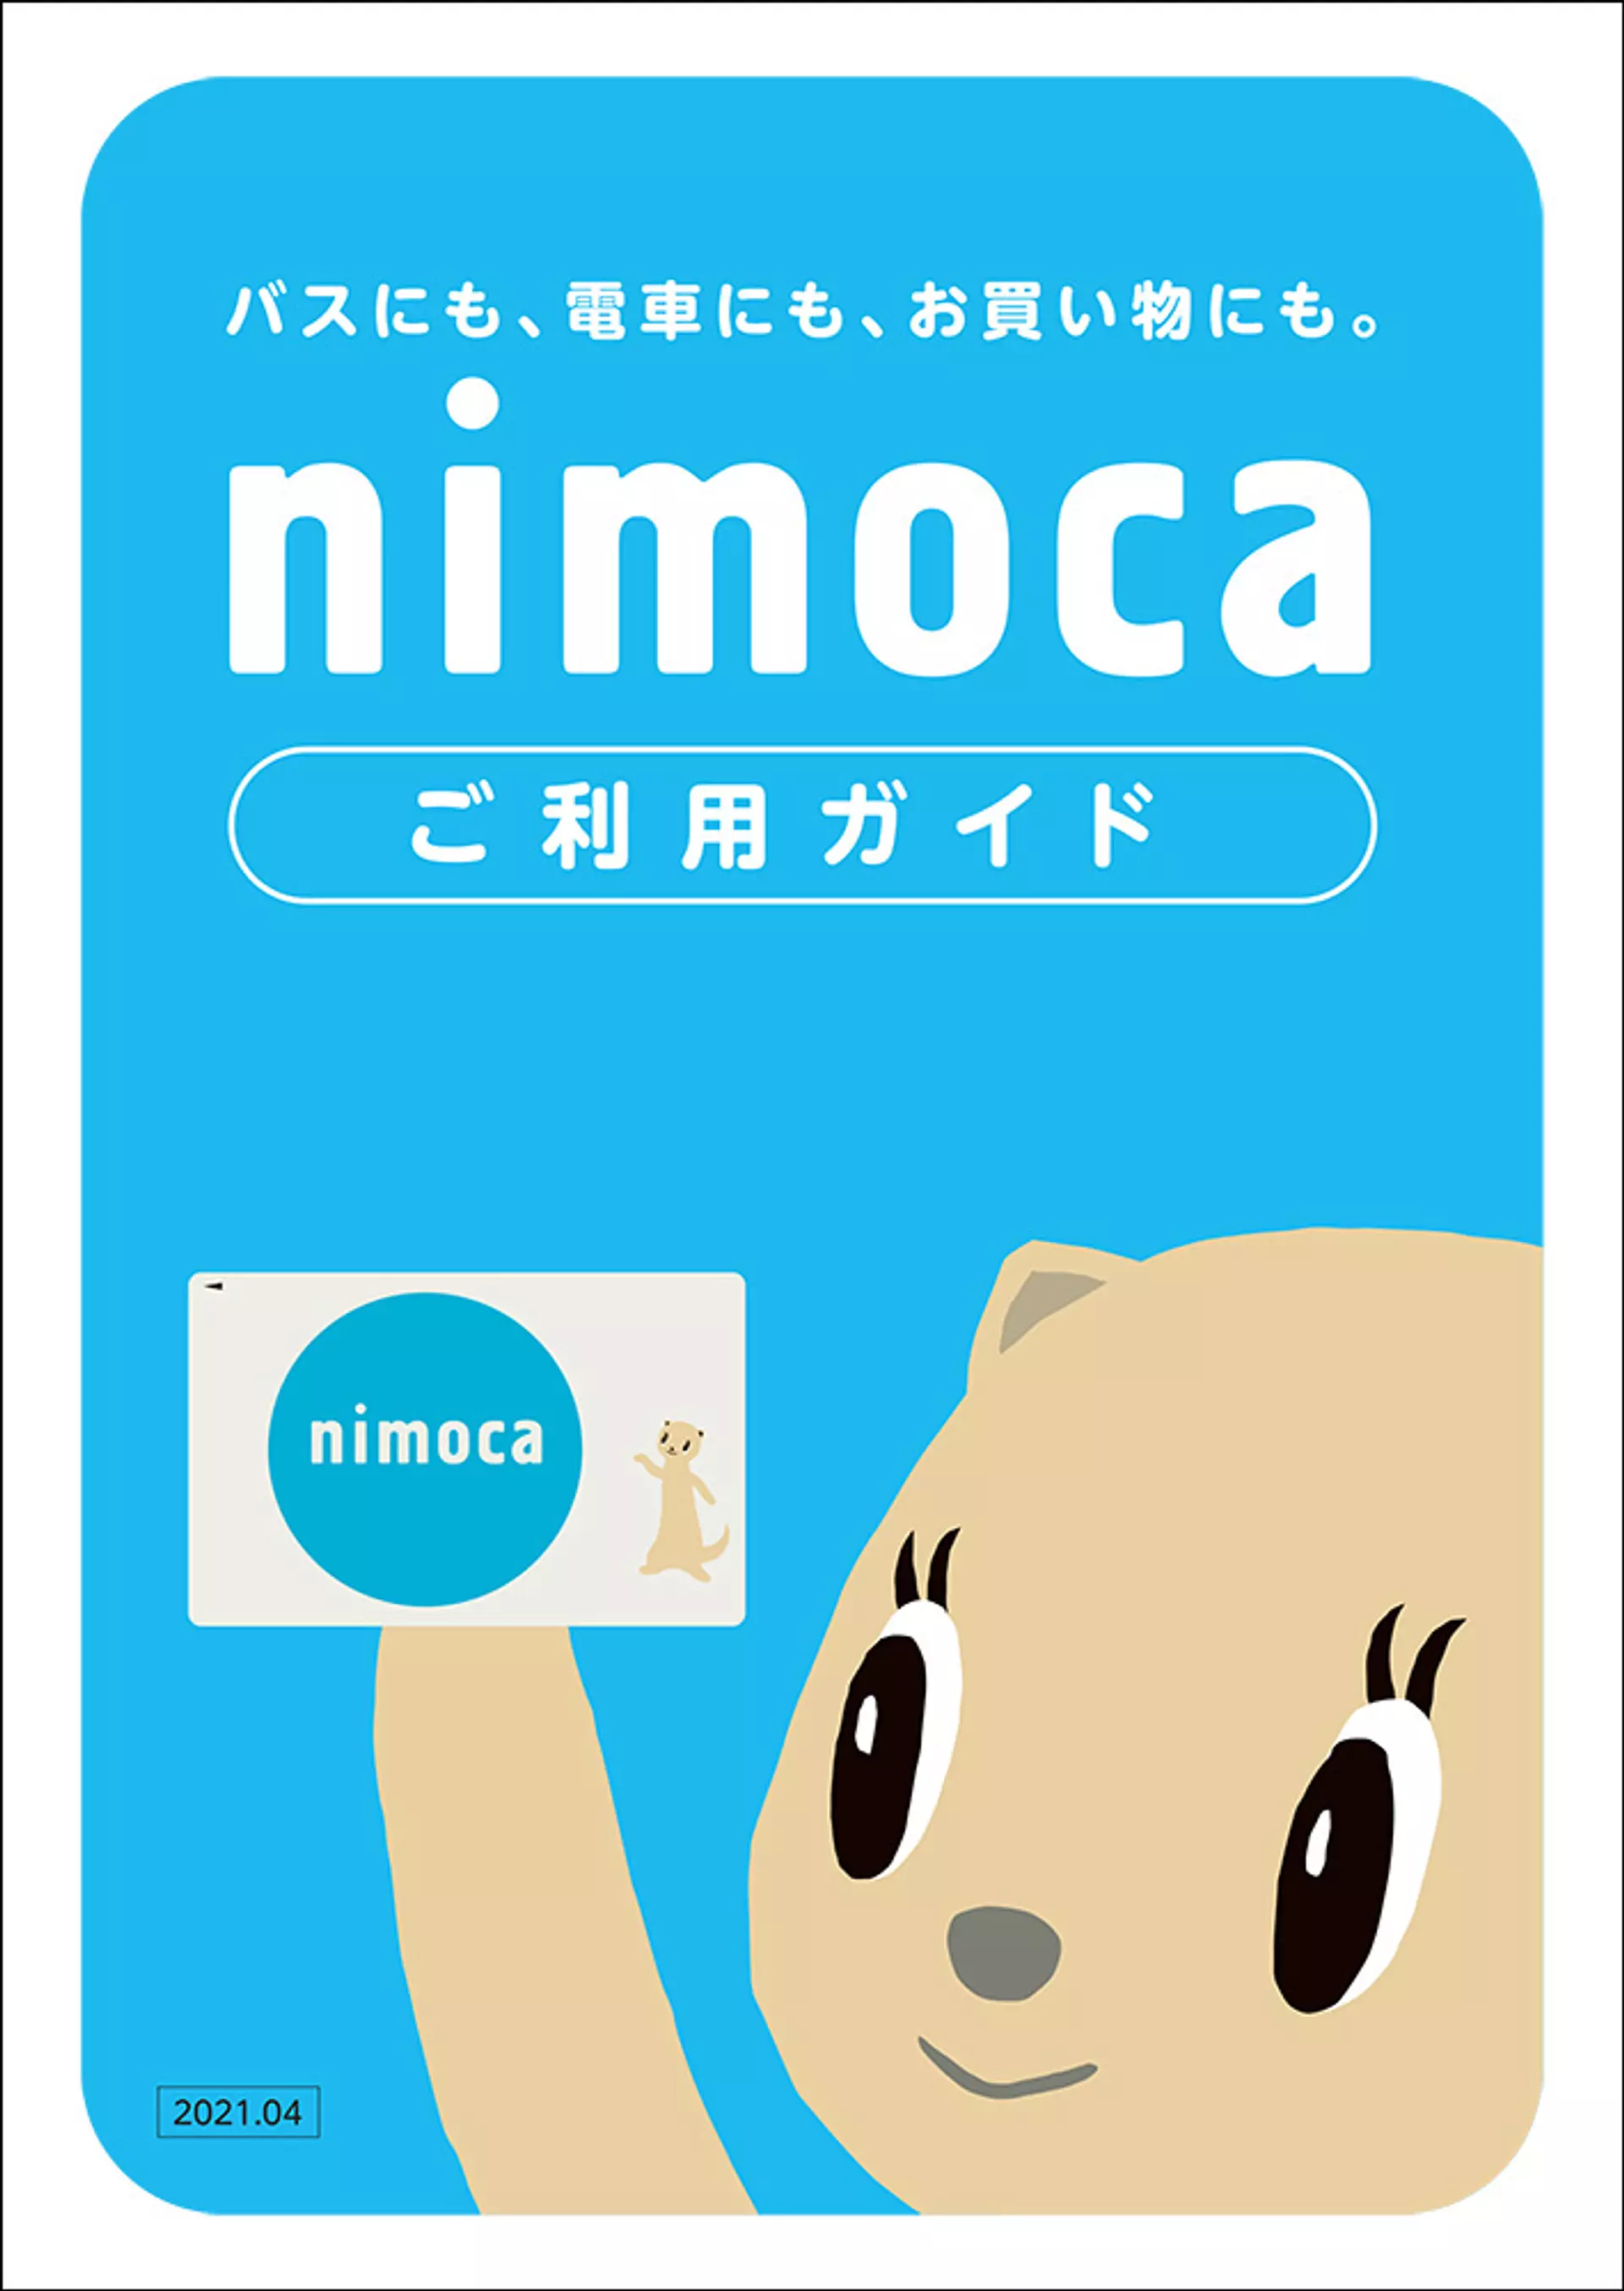 交通系ICカード｢ICAS nimoca｣